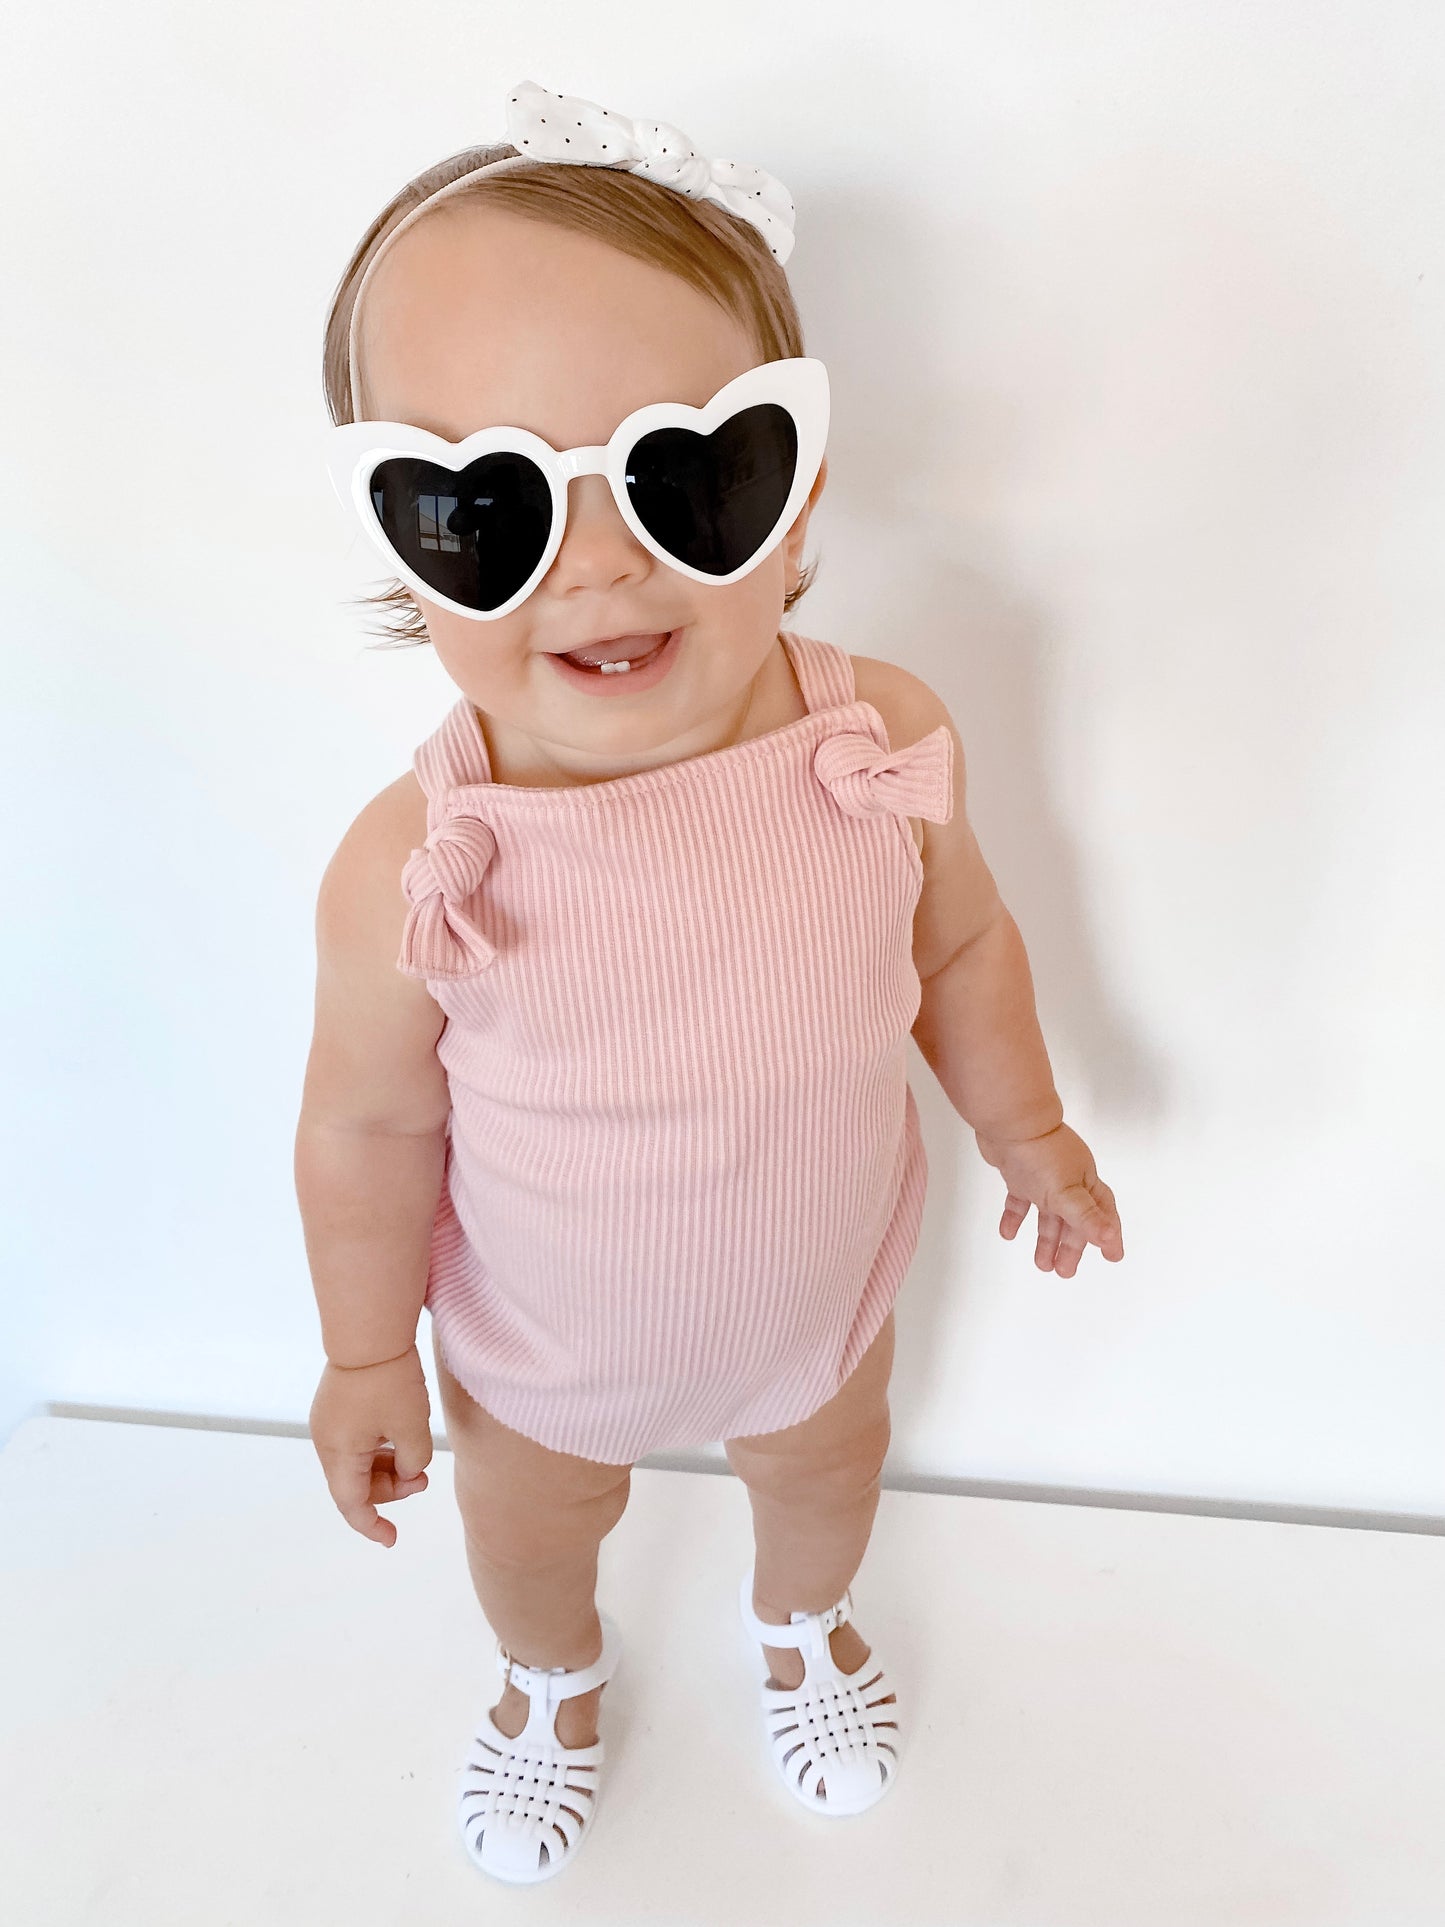 Baby white love heart sunglasses